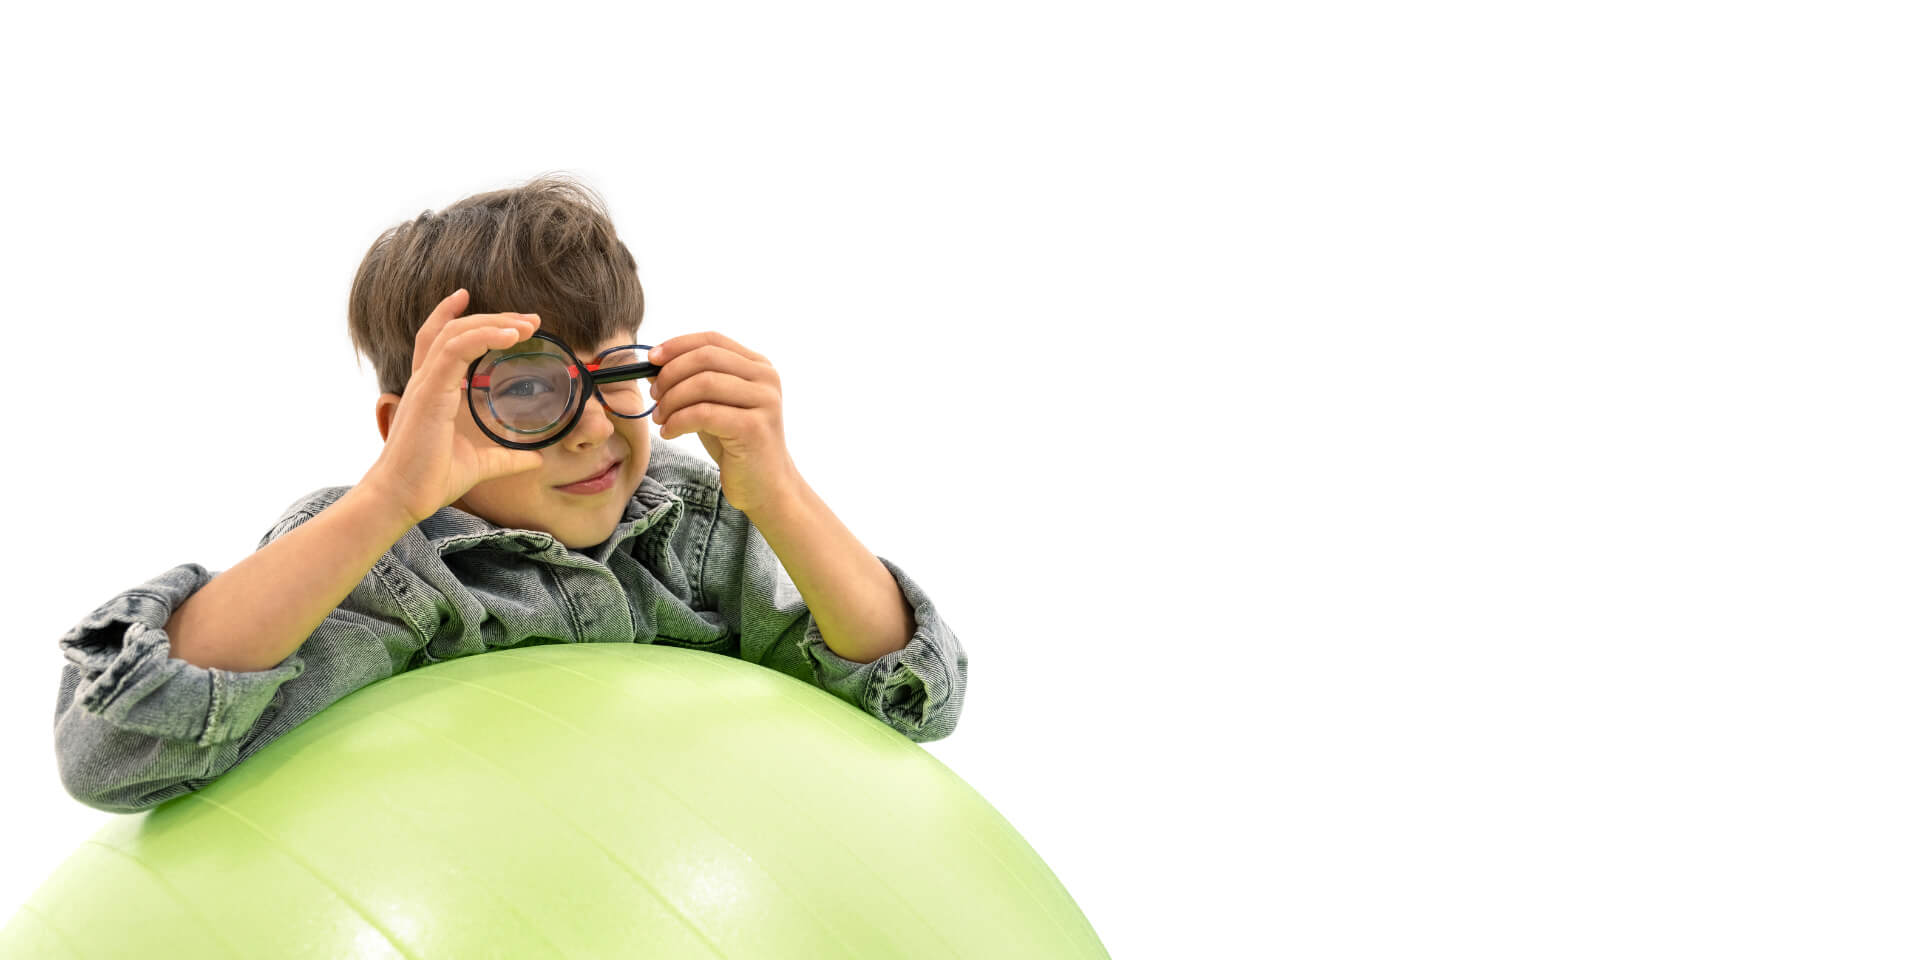 En dreng der har ZEISS briller på til kontrol af myopi, og som læner sig op af en hoppebold og holder en lup for øjet.